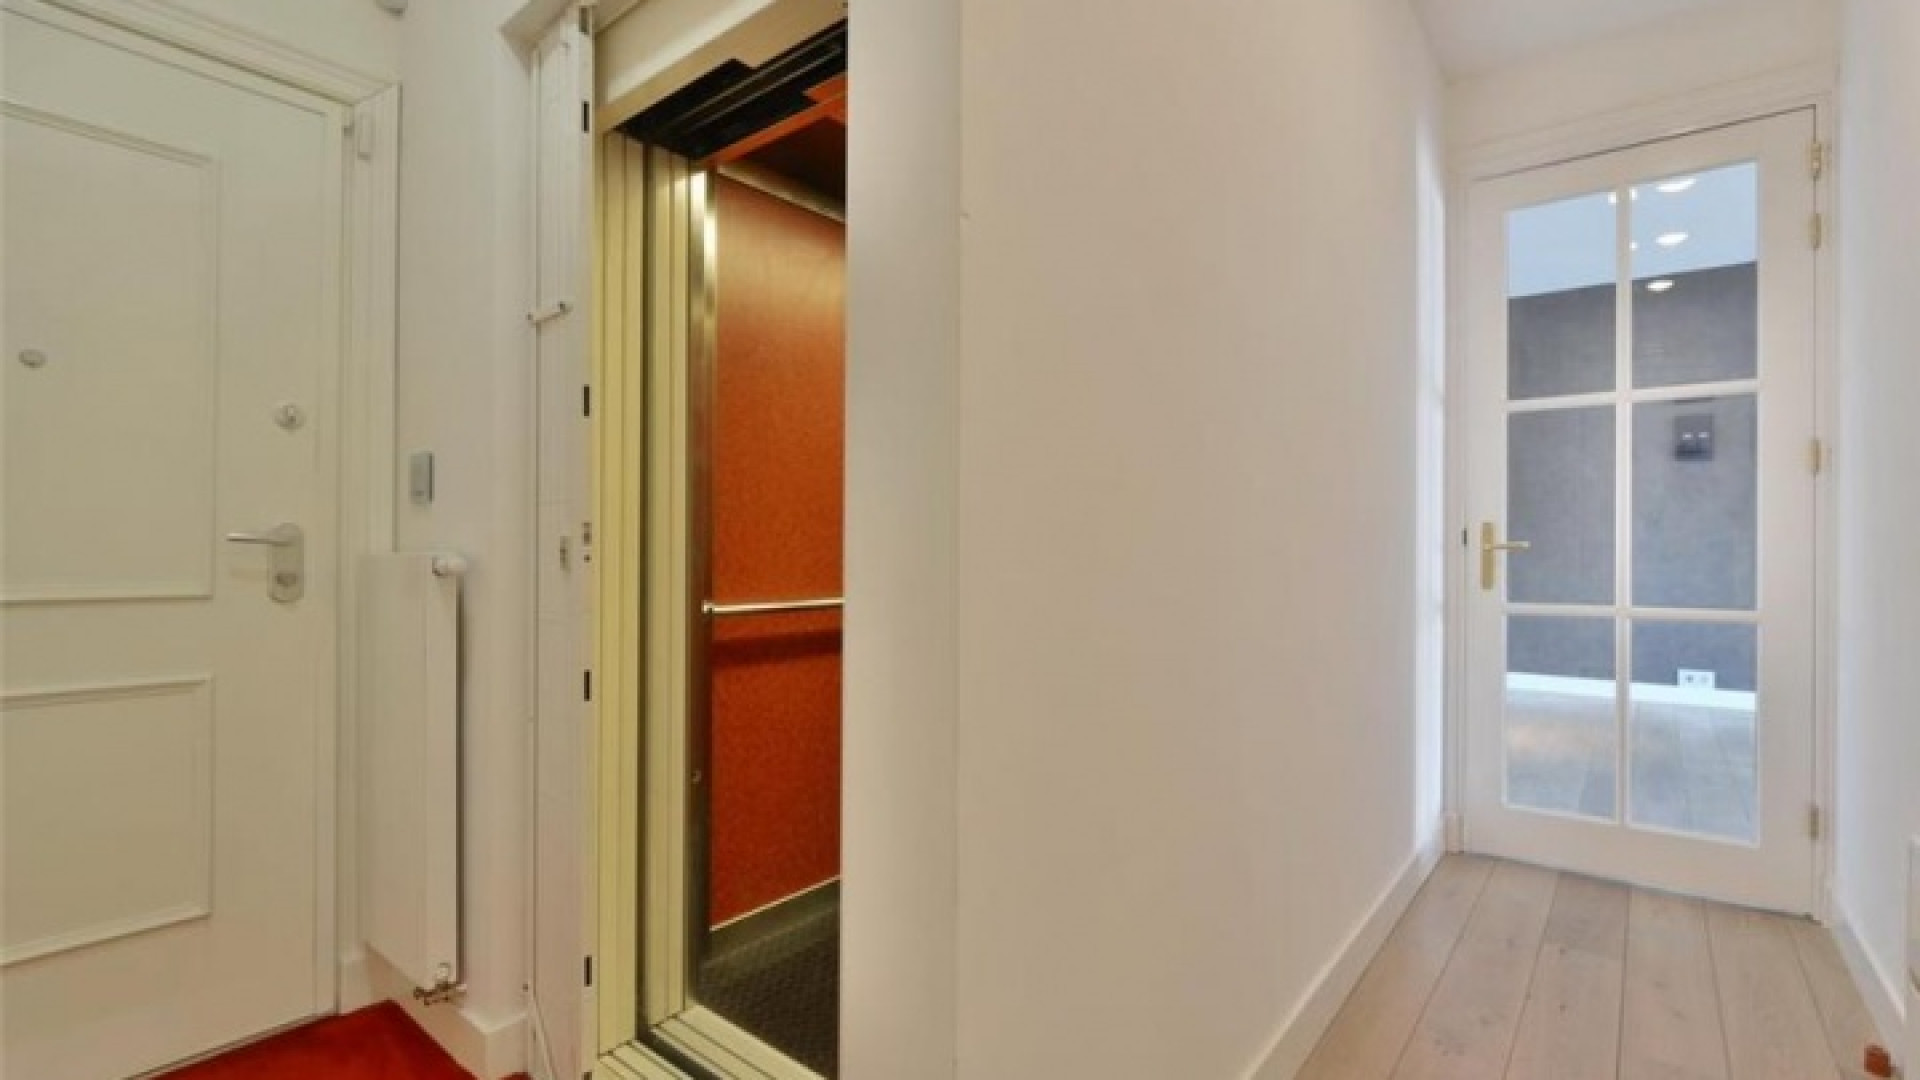 Frank Rijkaard vindt huurder voor dit zeer luxe appartement met jacuzzi op dakterras. Zie foto's 5